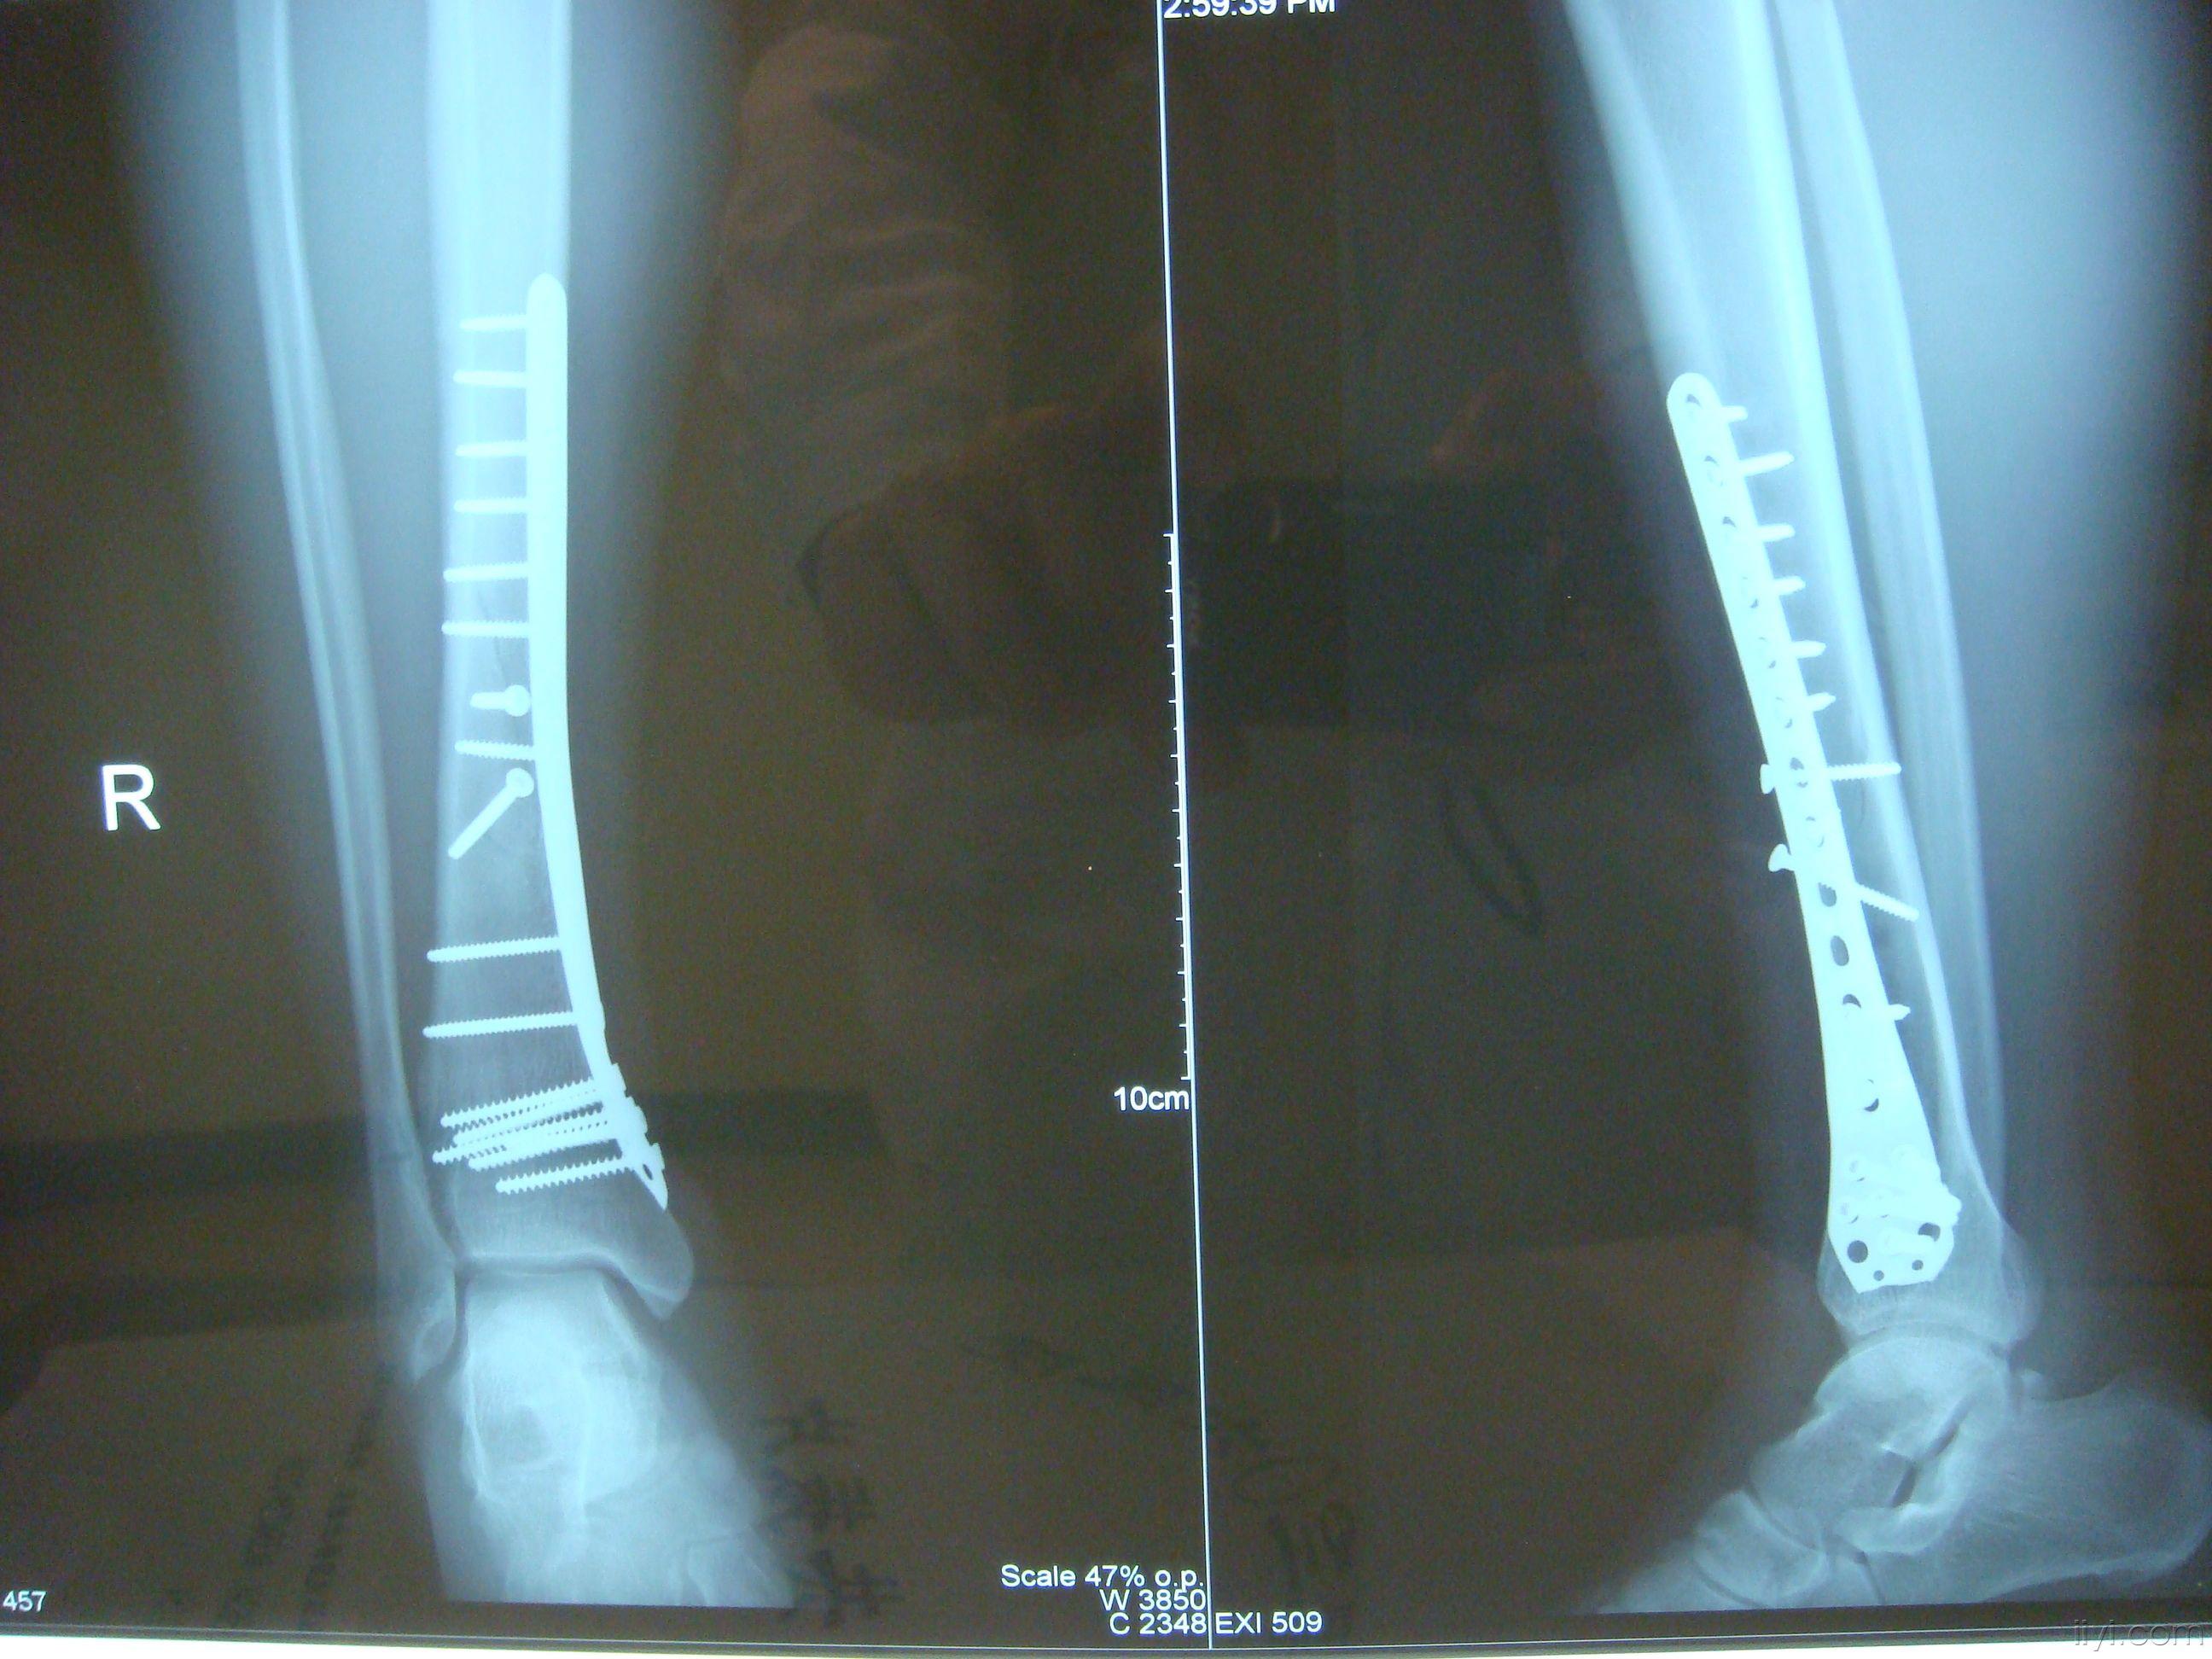 遠 端 腓骨 骨折 位 脛骨近位端骨折の症状・診断・治療 [骨・筋肉・関節の病気]